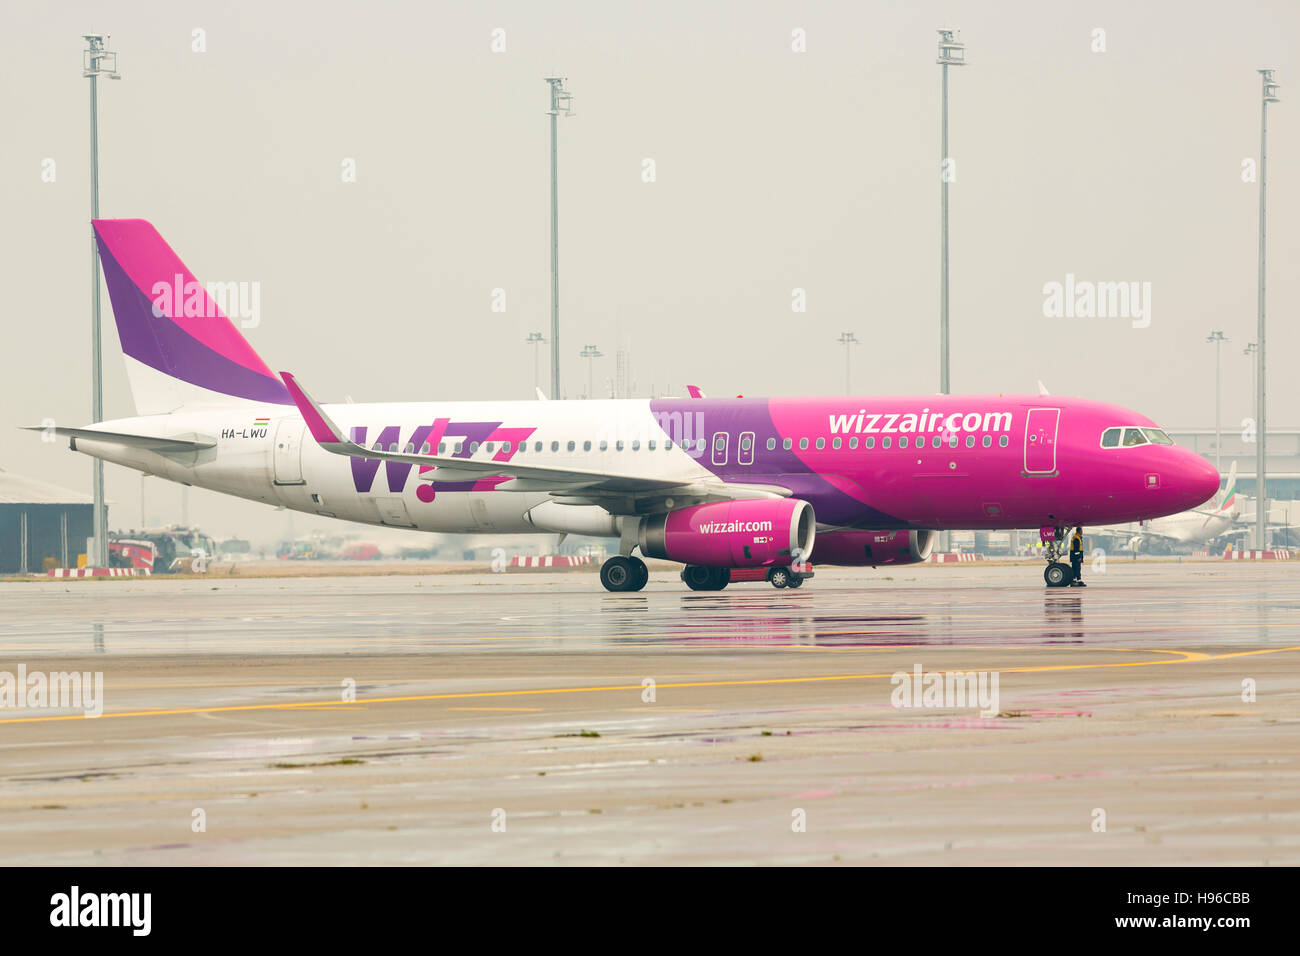 Sofia, Bulgarien - 16. Oktober 2016: Wizz Air Flugzeug auf der Landebahn nach der Landung am Flughafen. Stockfoto